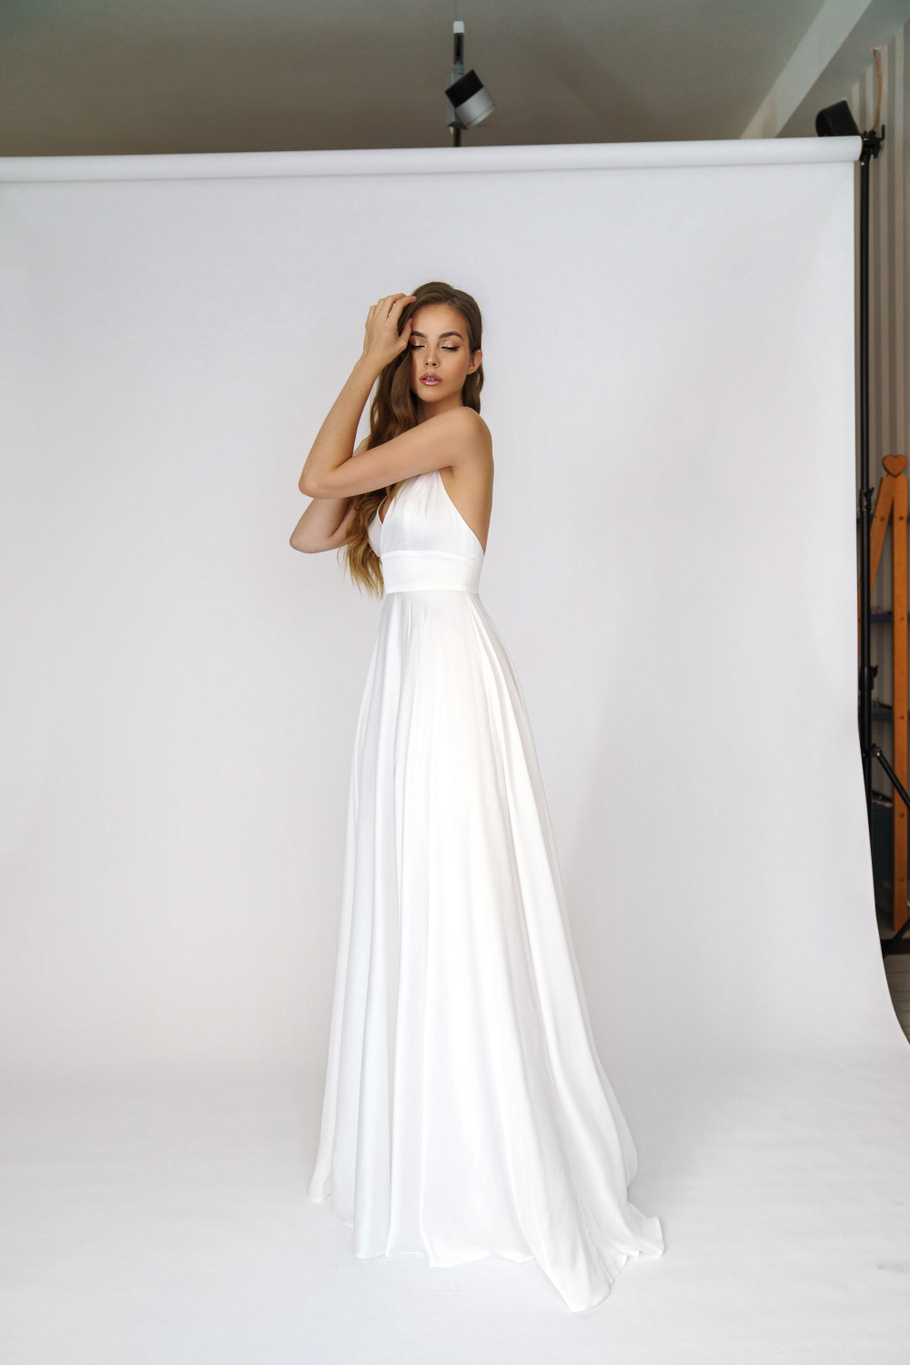 Свадебное платье «Онити» Марта — купить в Екатеринбурге платье Онити из коллекции 2021 года